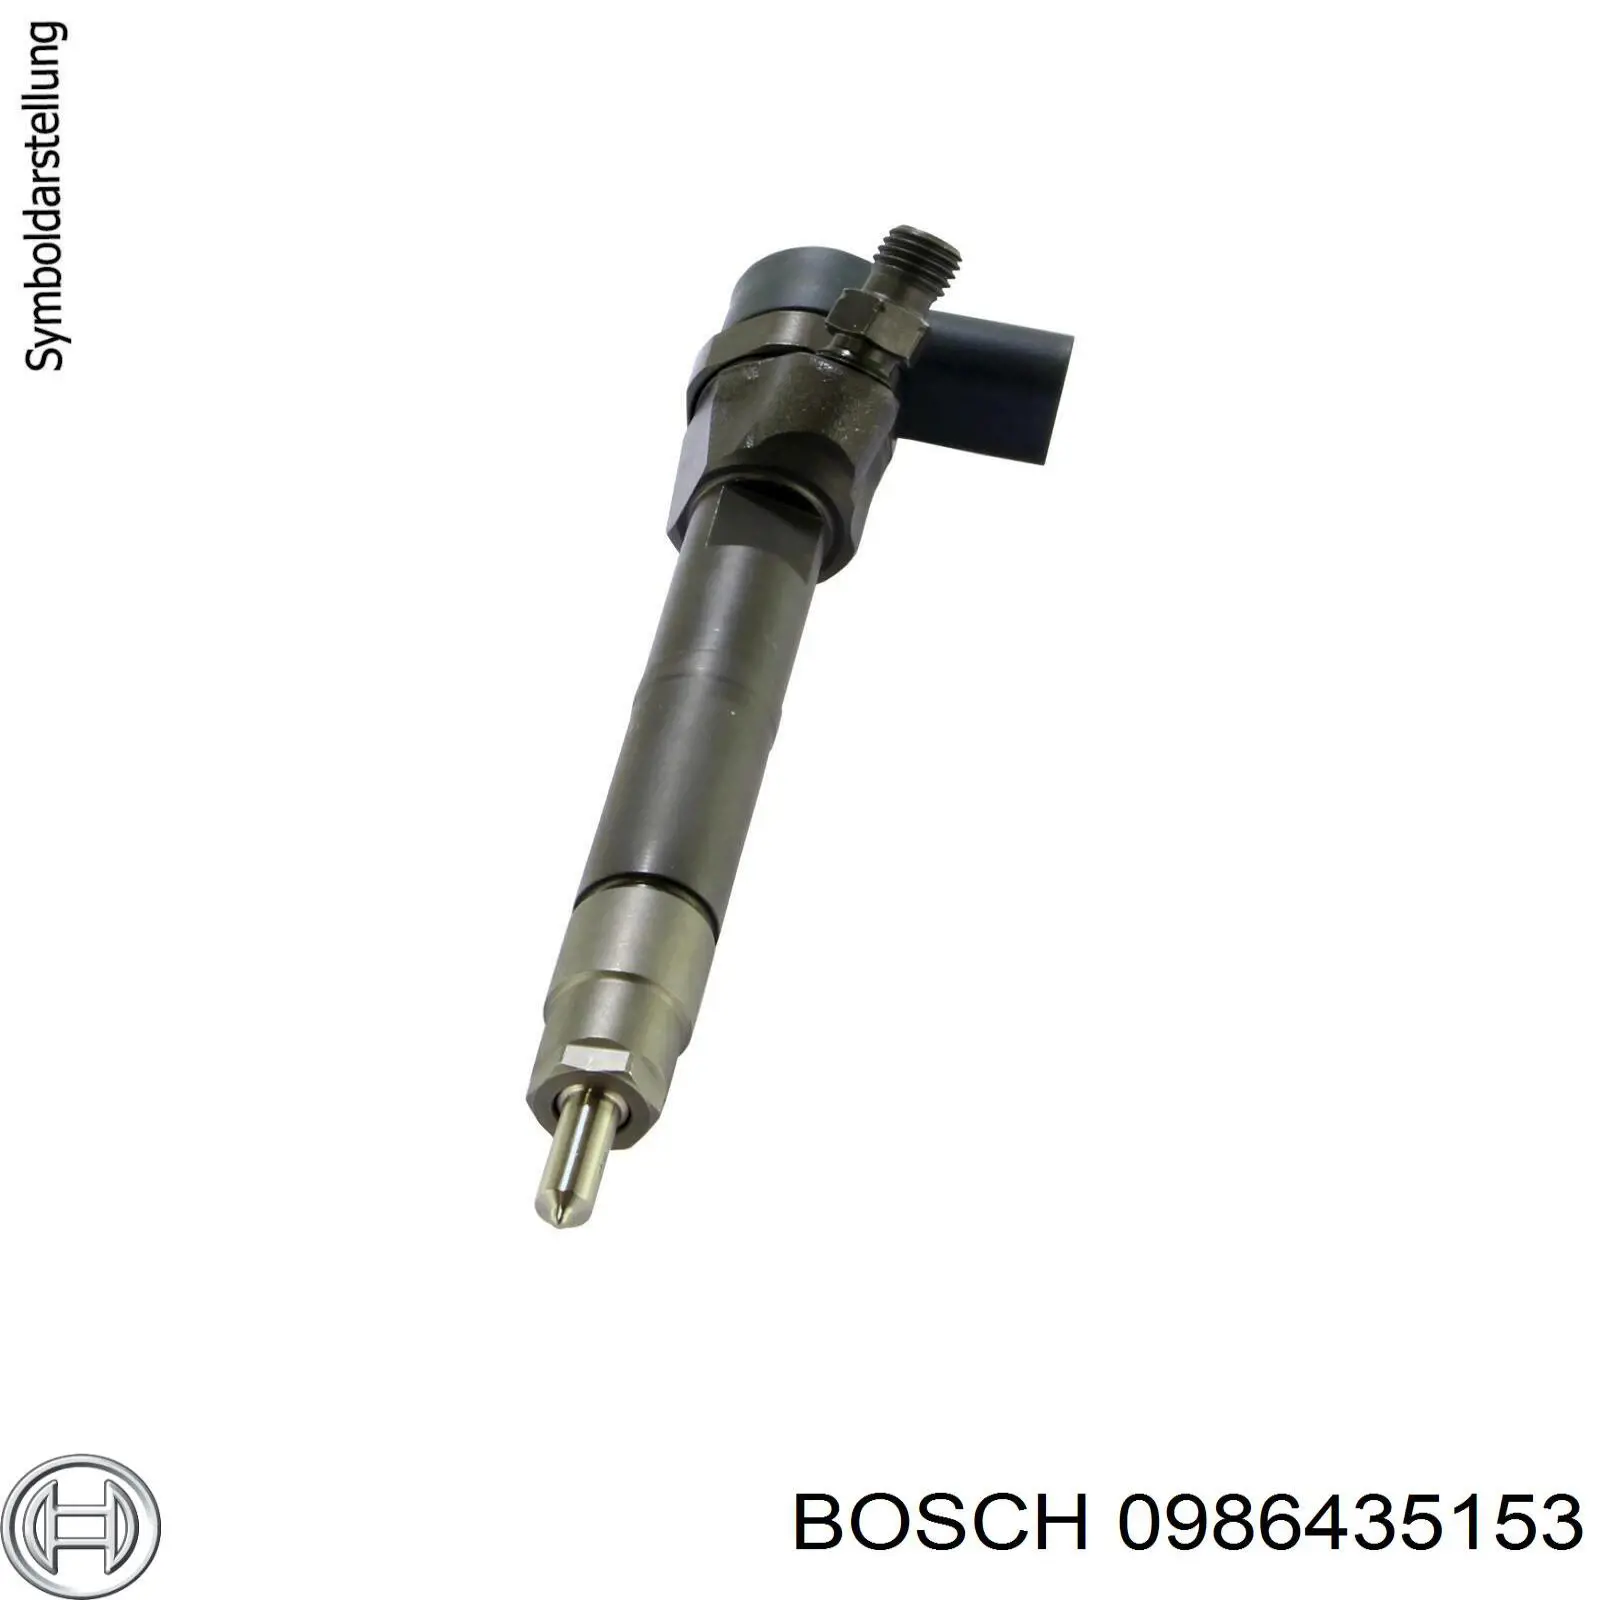 0 986 435 153 Bosch injetor de injeção de combustível